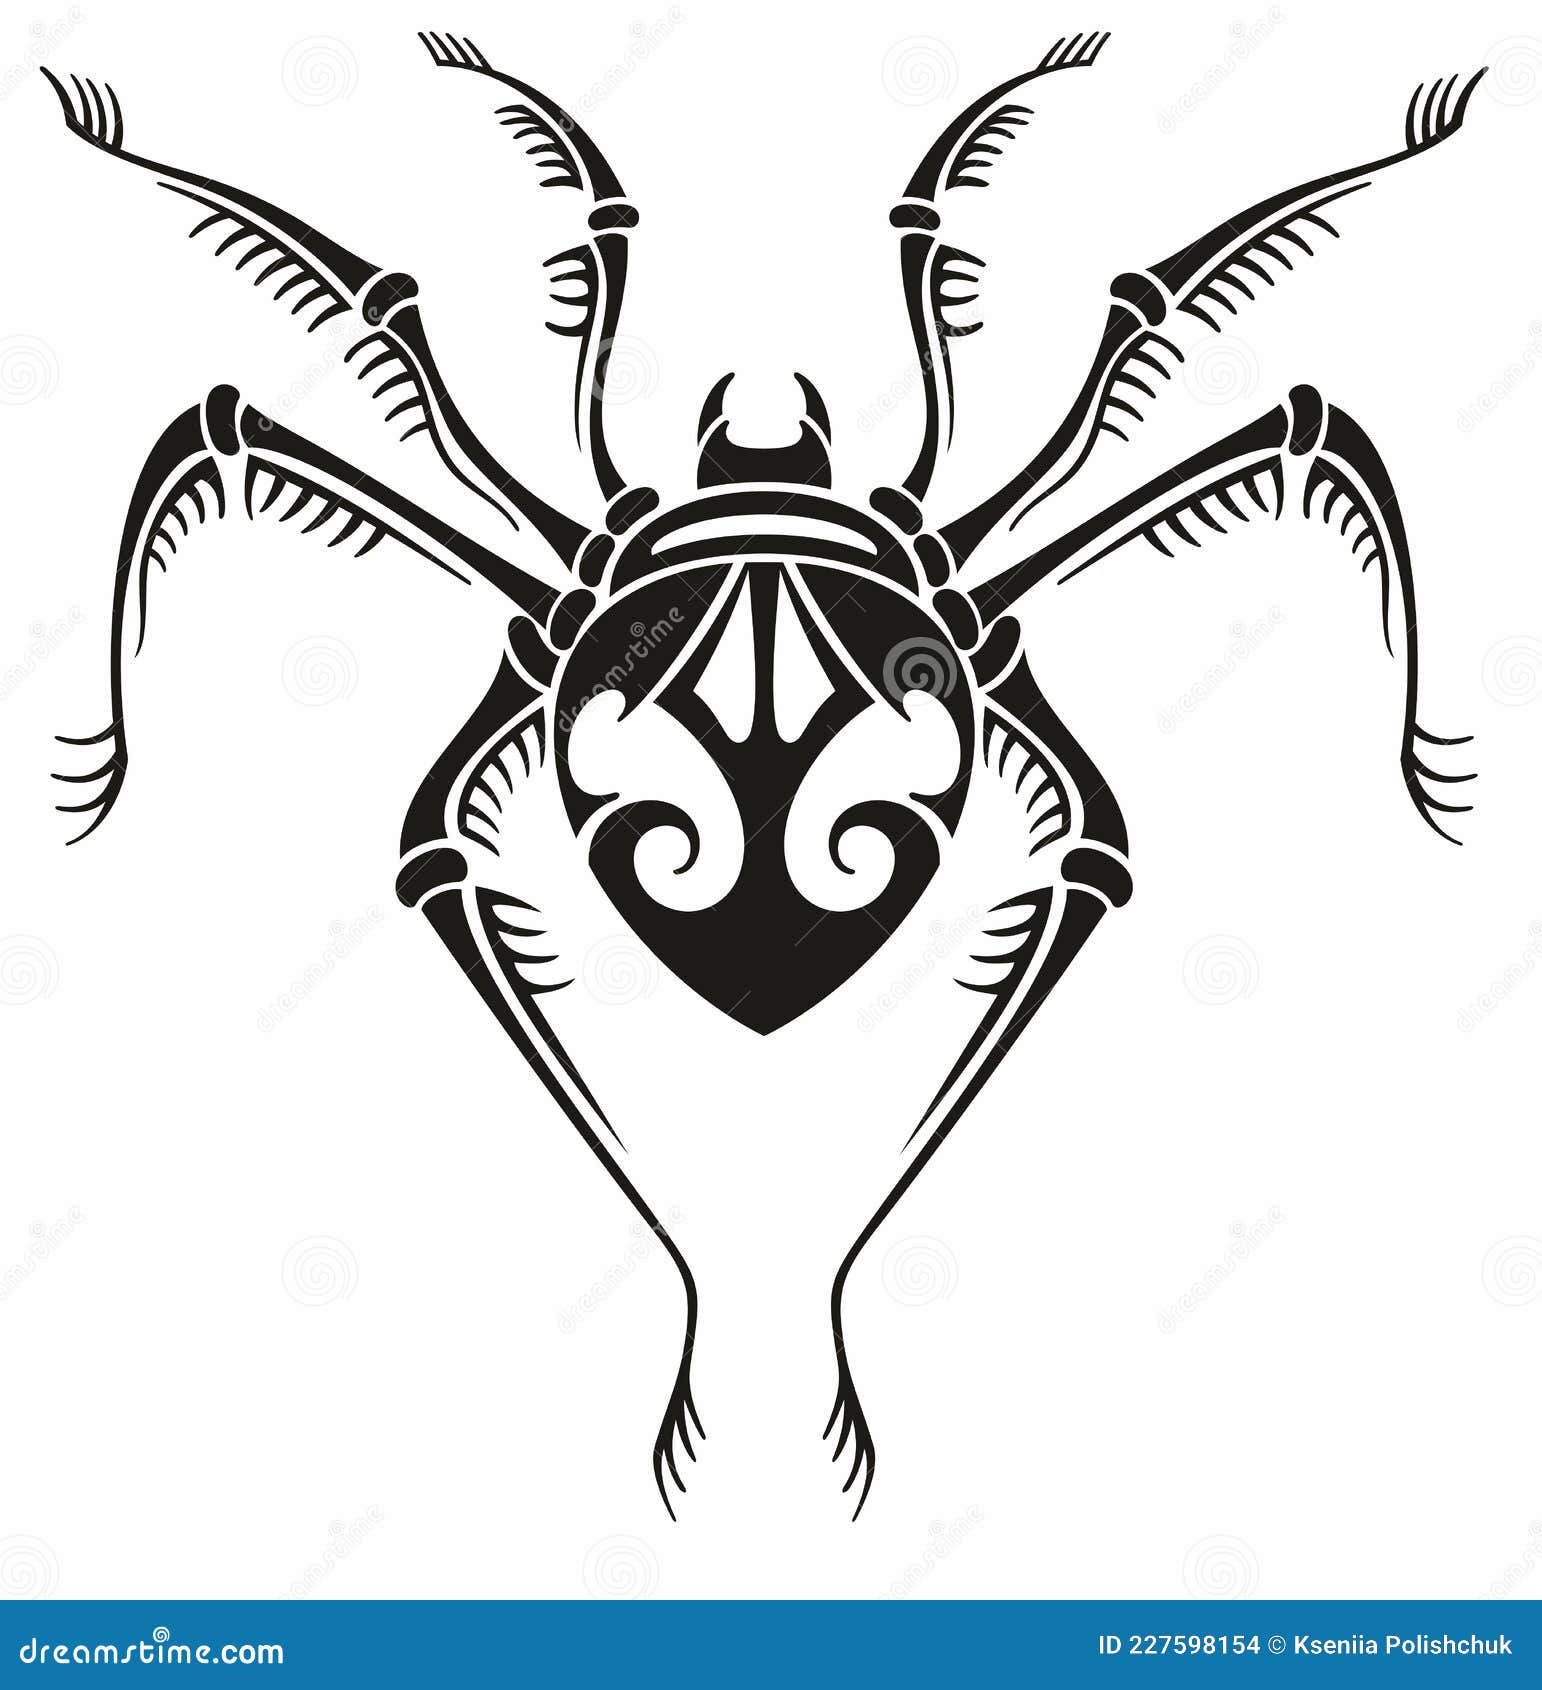 Realistic Spider Tattoo - Temu